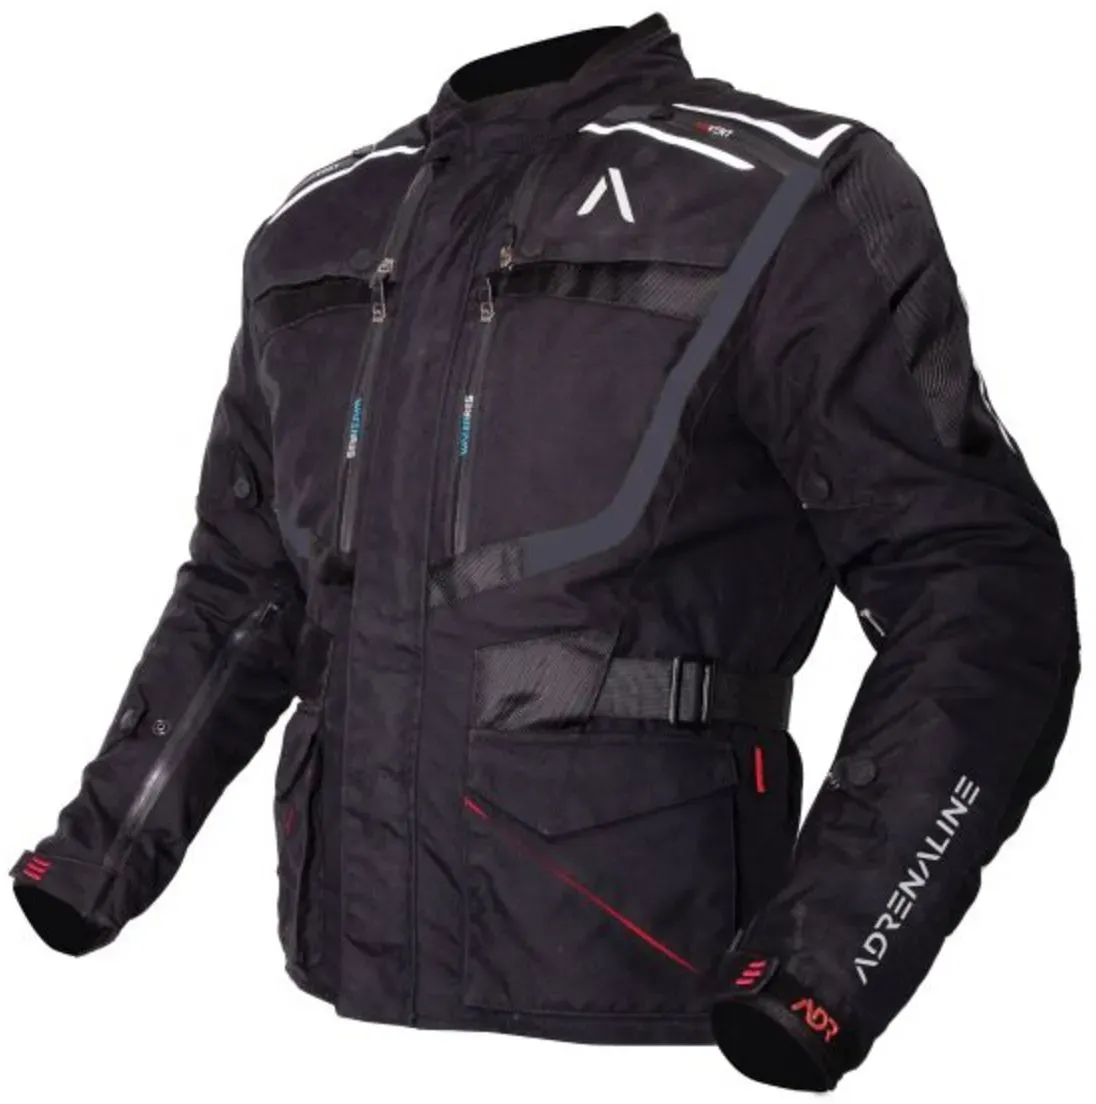 Veste textile pour moto ADRENALINE ORION PPE Taille 4XL